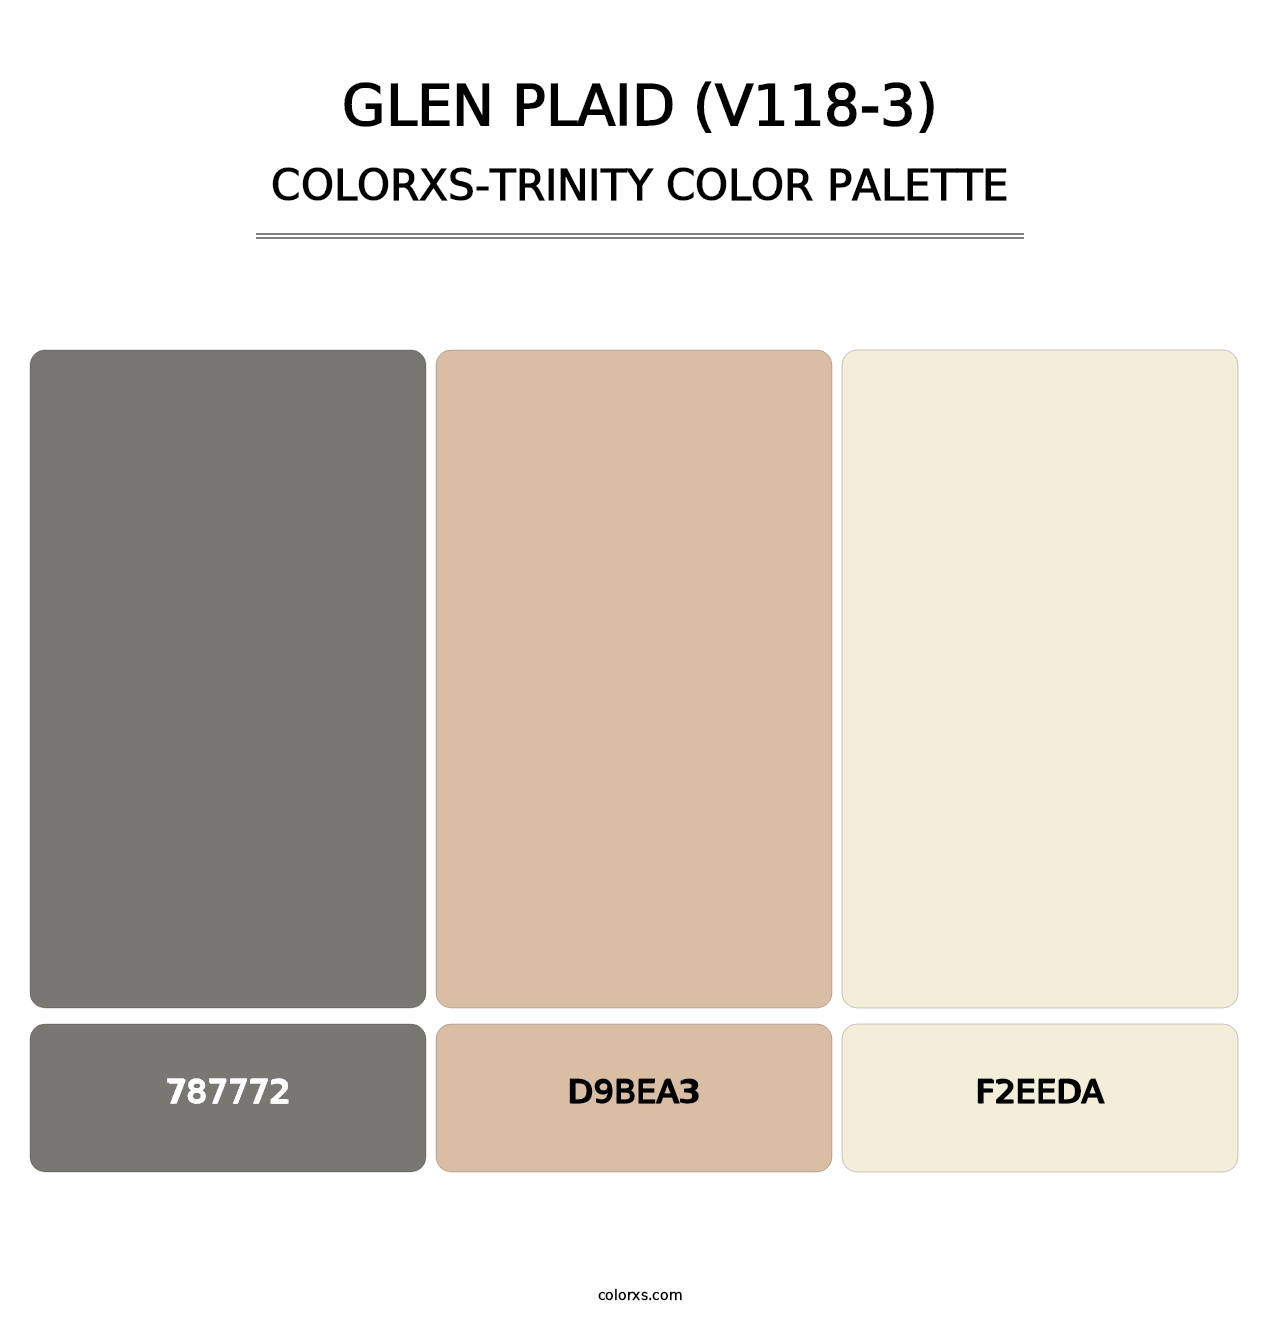 Glen Plaid (V118-3) - Colorxs Trinity Palette